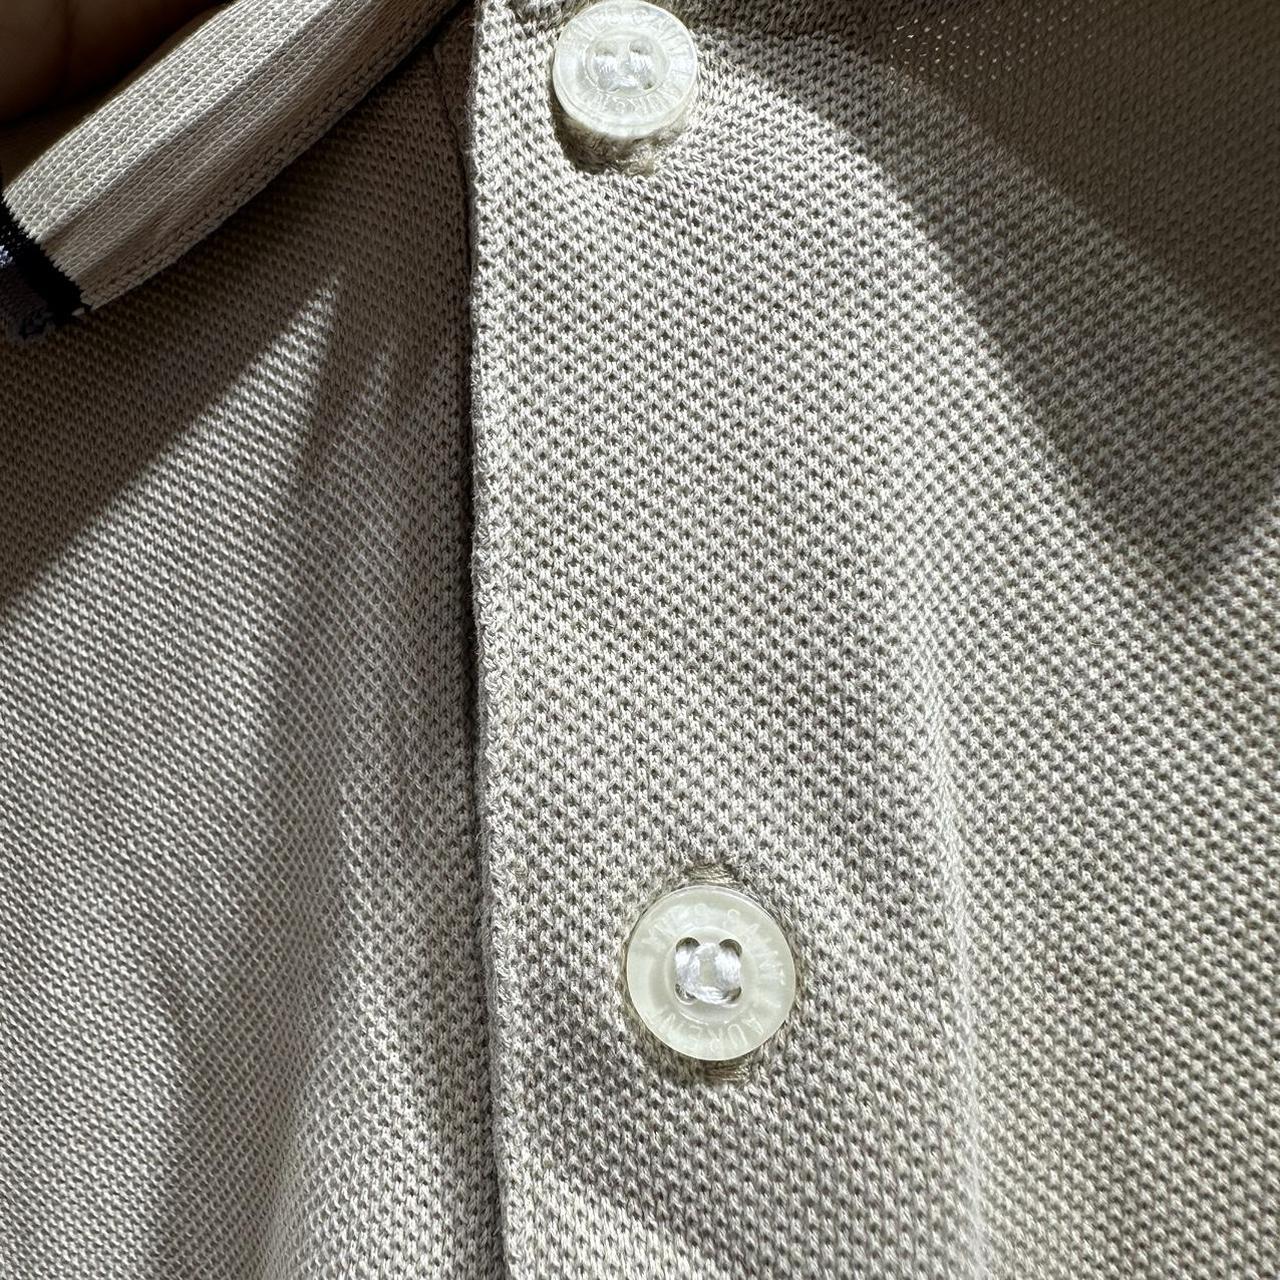 Vintage Ysl Polo Shirt ❗️() Item : Shirt Tag : - Depop